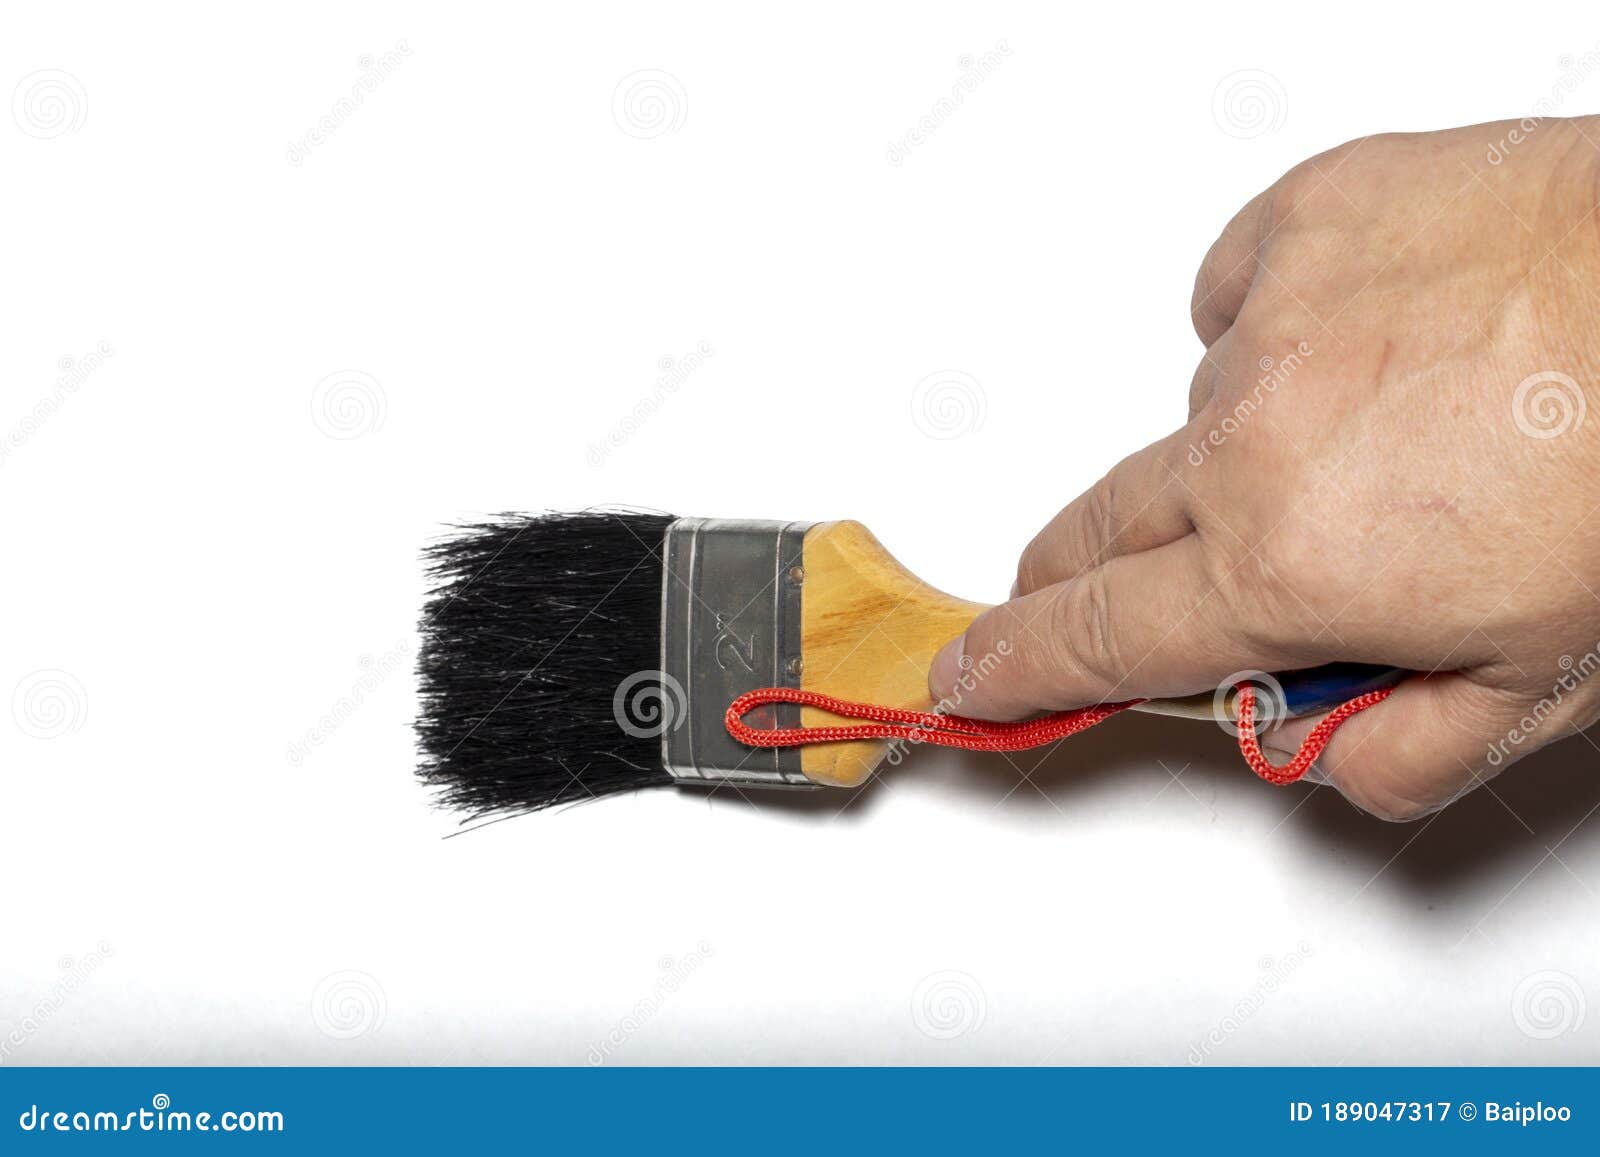 Hand Holding Big Paint Brush, without Paint , Isolated on White Background  Stock Image - Image of brush, equipment: 189047317